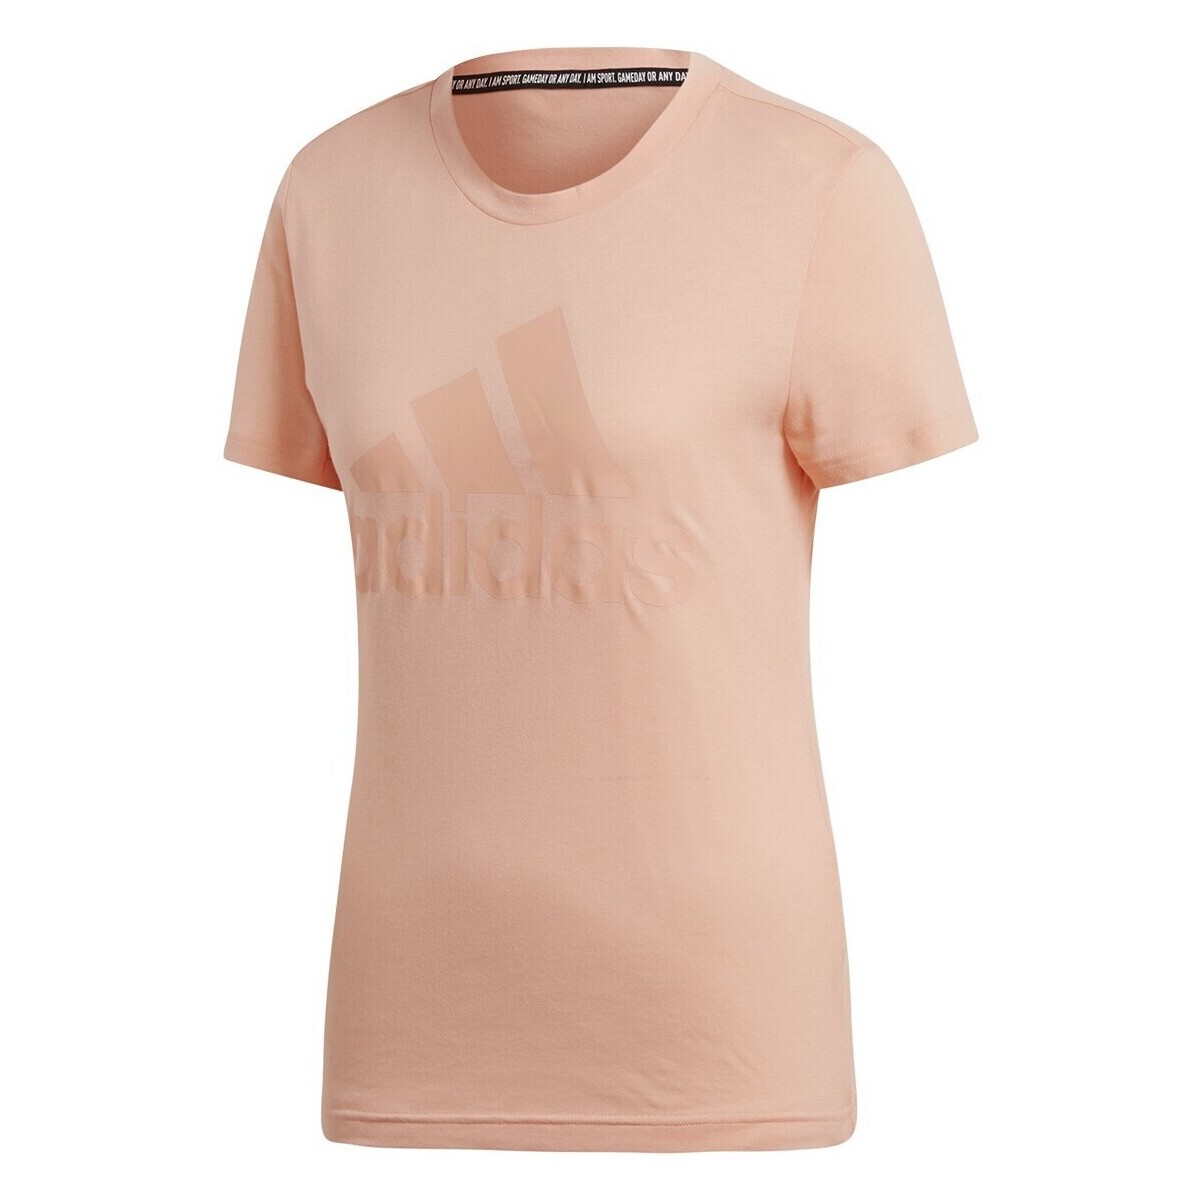 Vêtements Femme T-shirts manches courtes adidas Originals EB3795 Rose